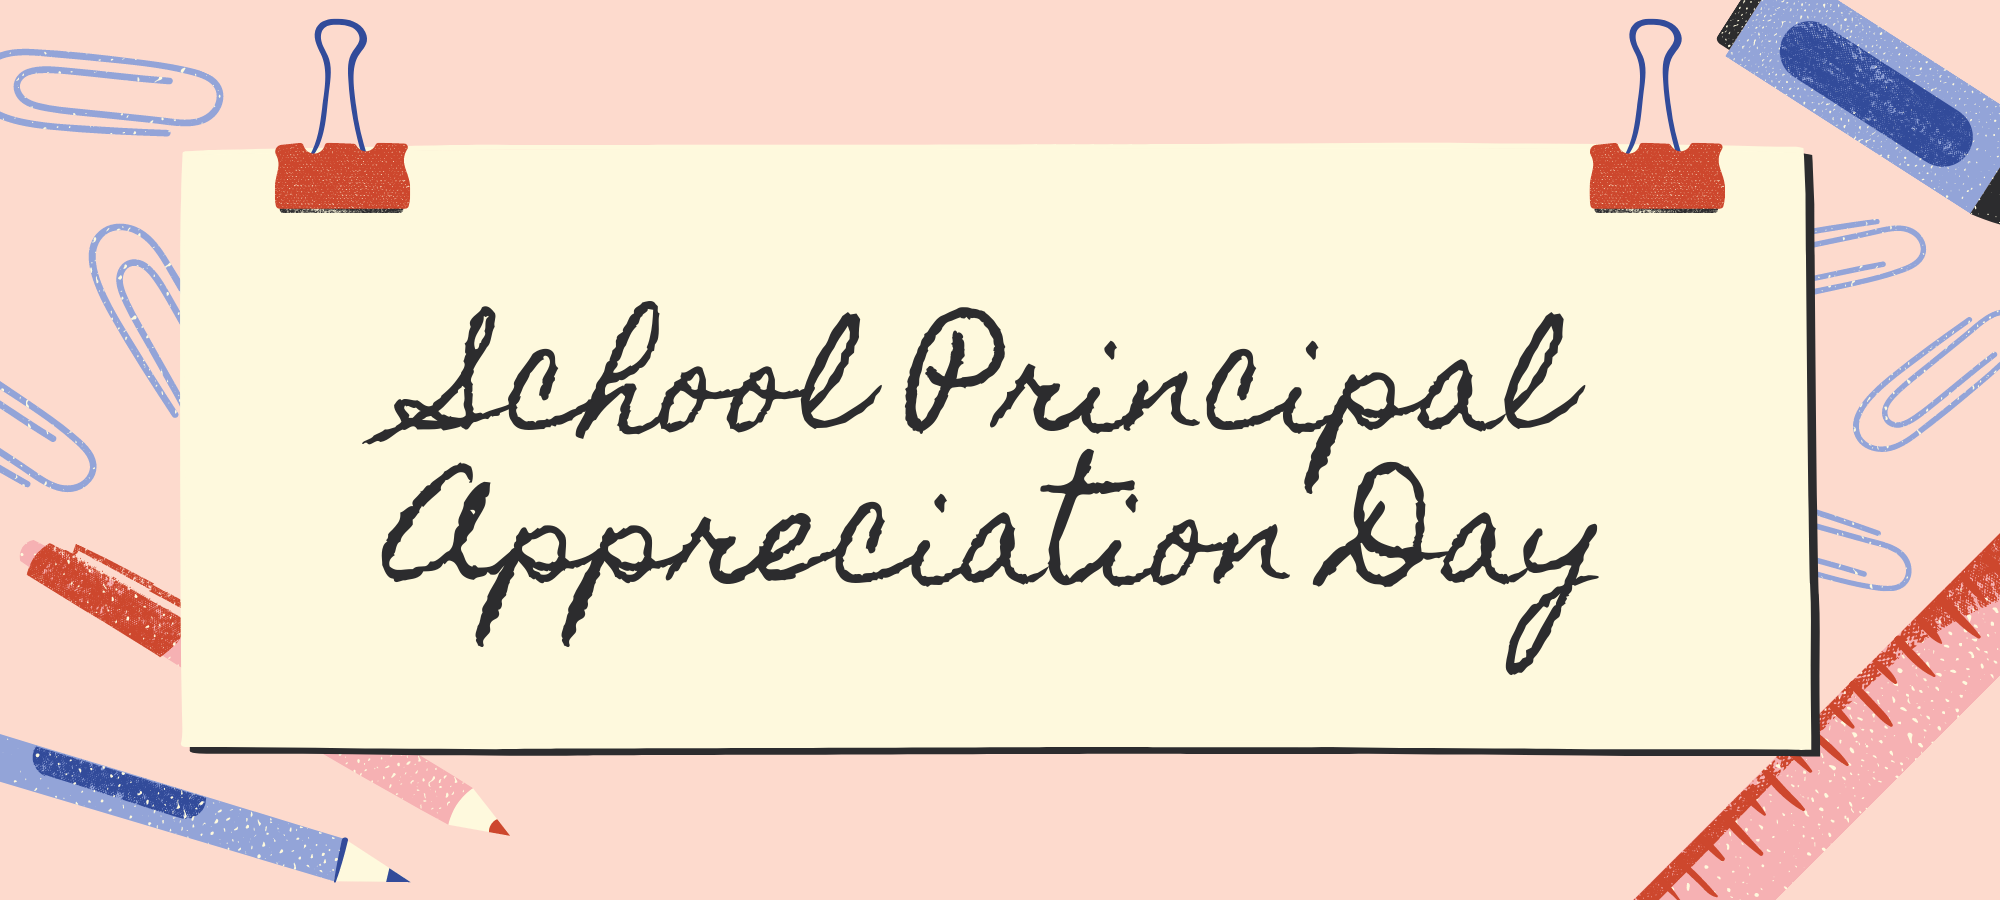 School Principal Appreciation Day Celebrating Our Local Principals